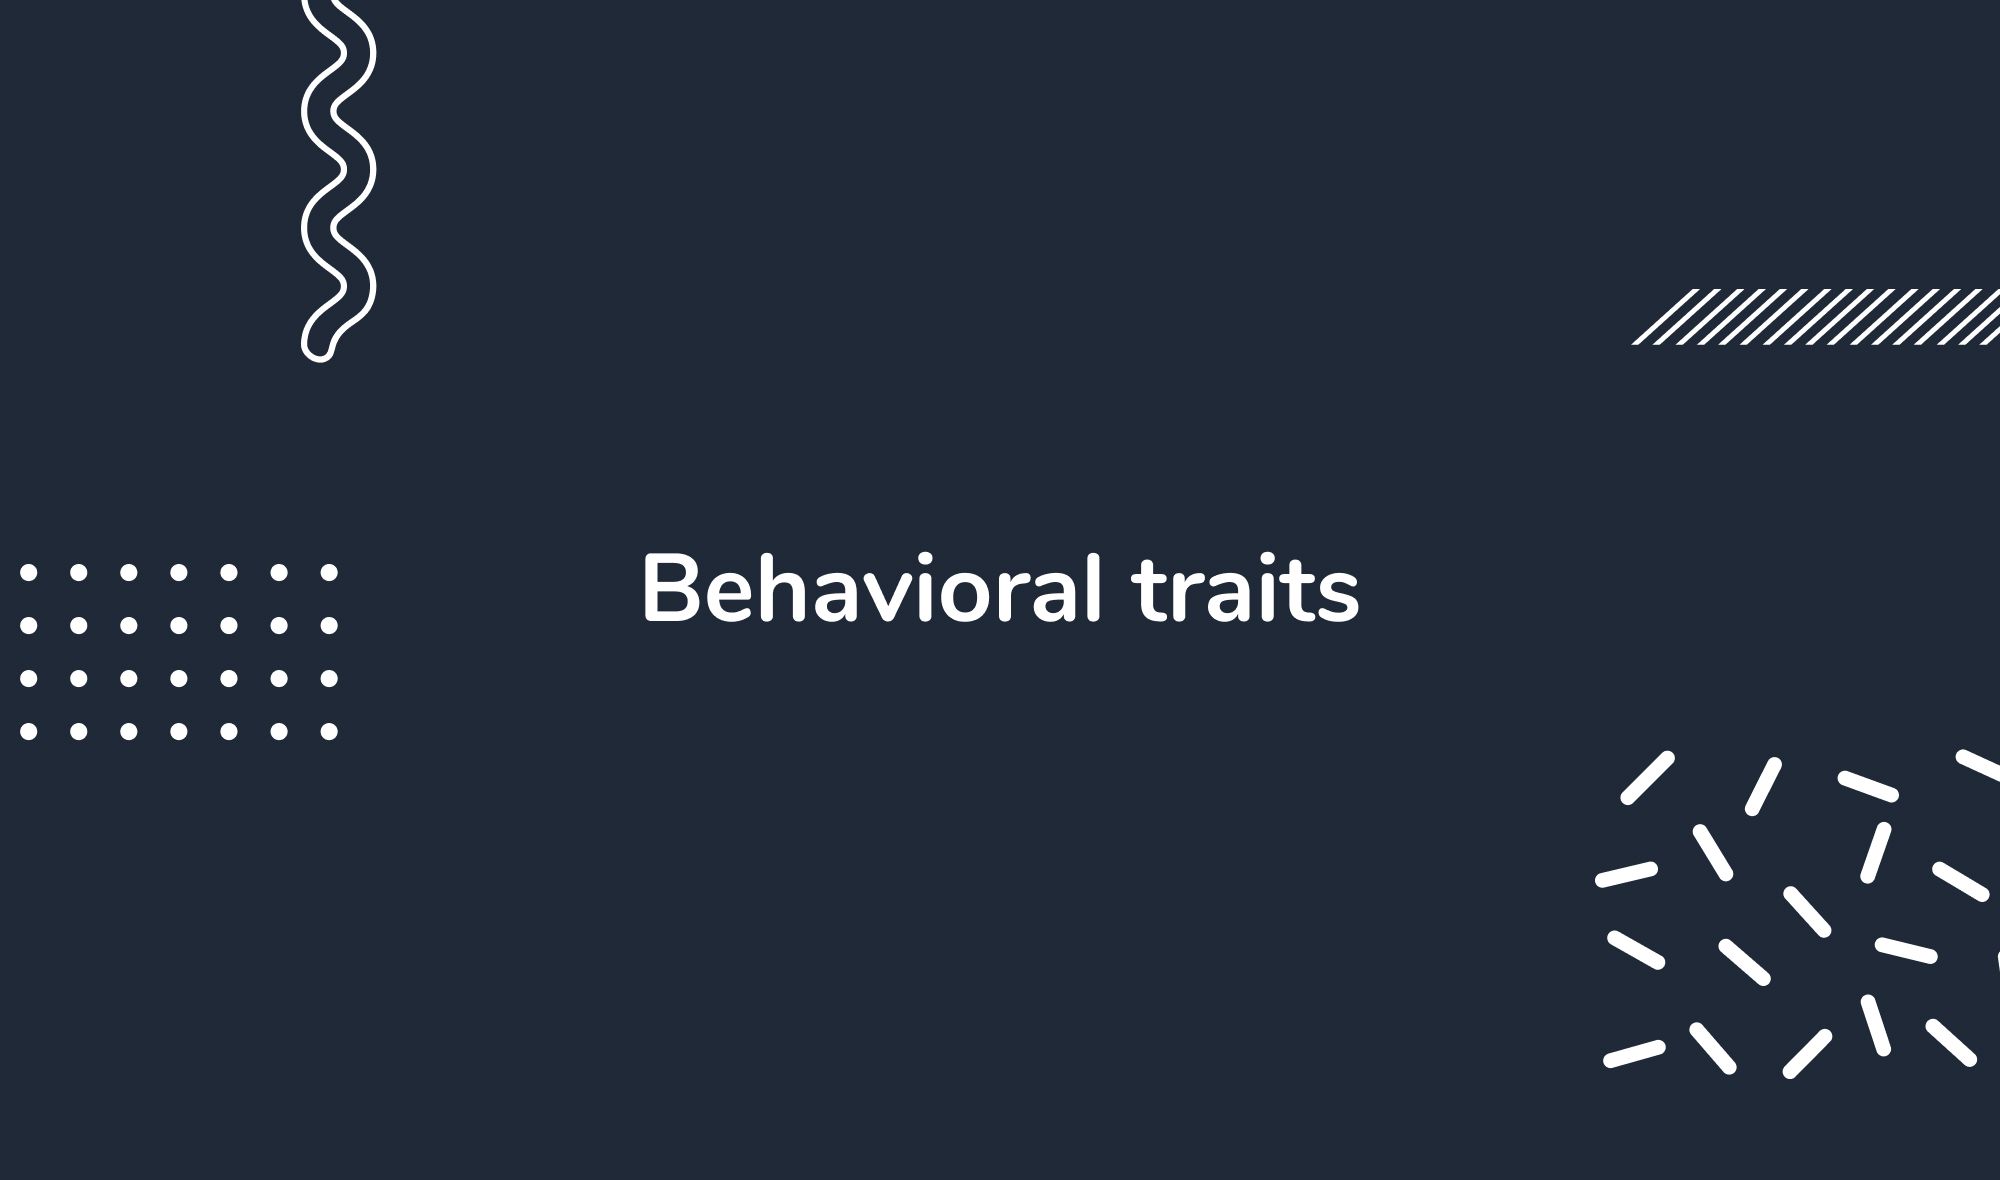 Behavioral traits